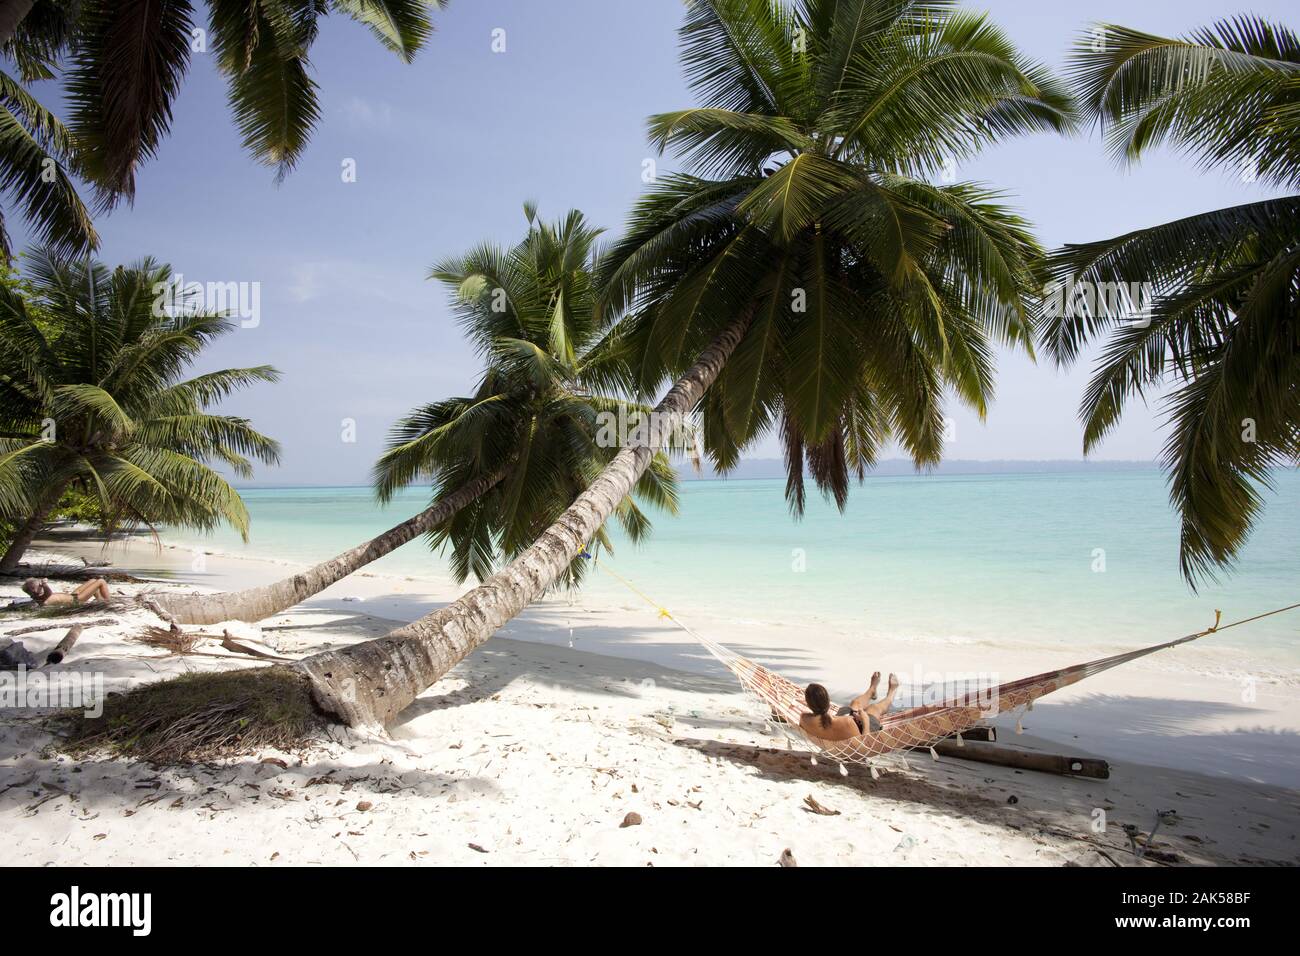 Andamanen: Hauptinsel Havelock Island, Relaxn am Strand Nr. 5, Indien | Utilizzo di tutto il mondo Foto Stock